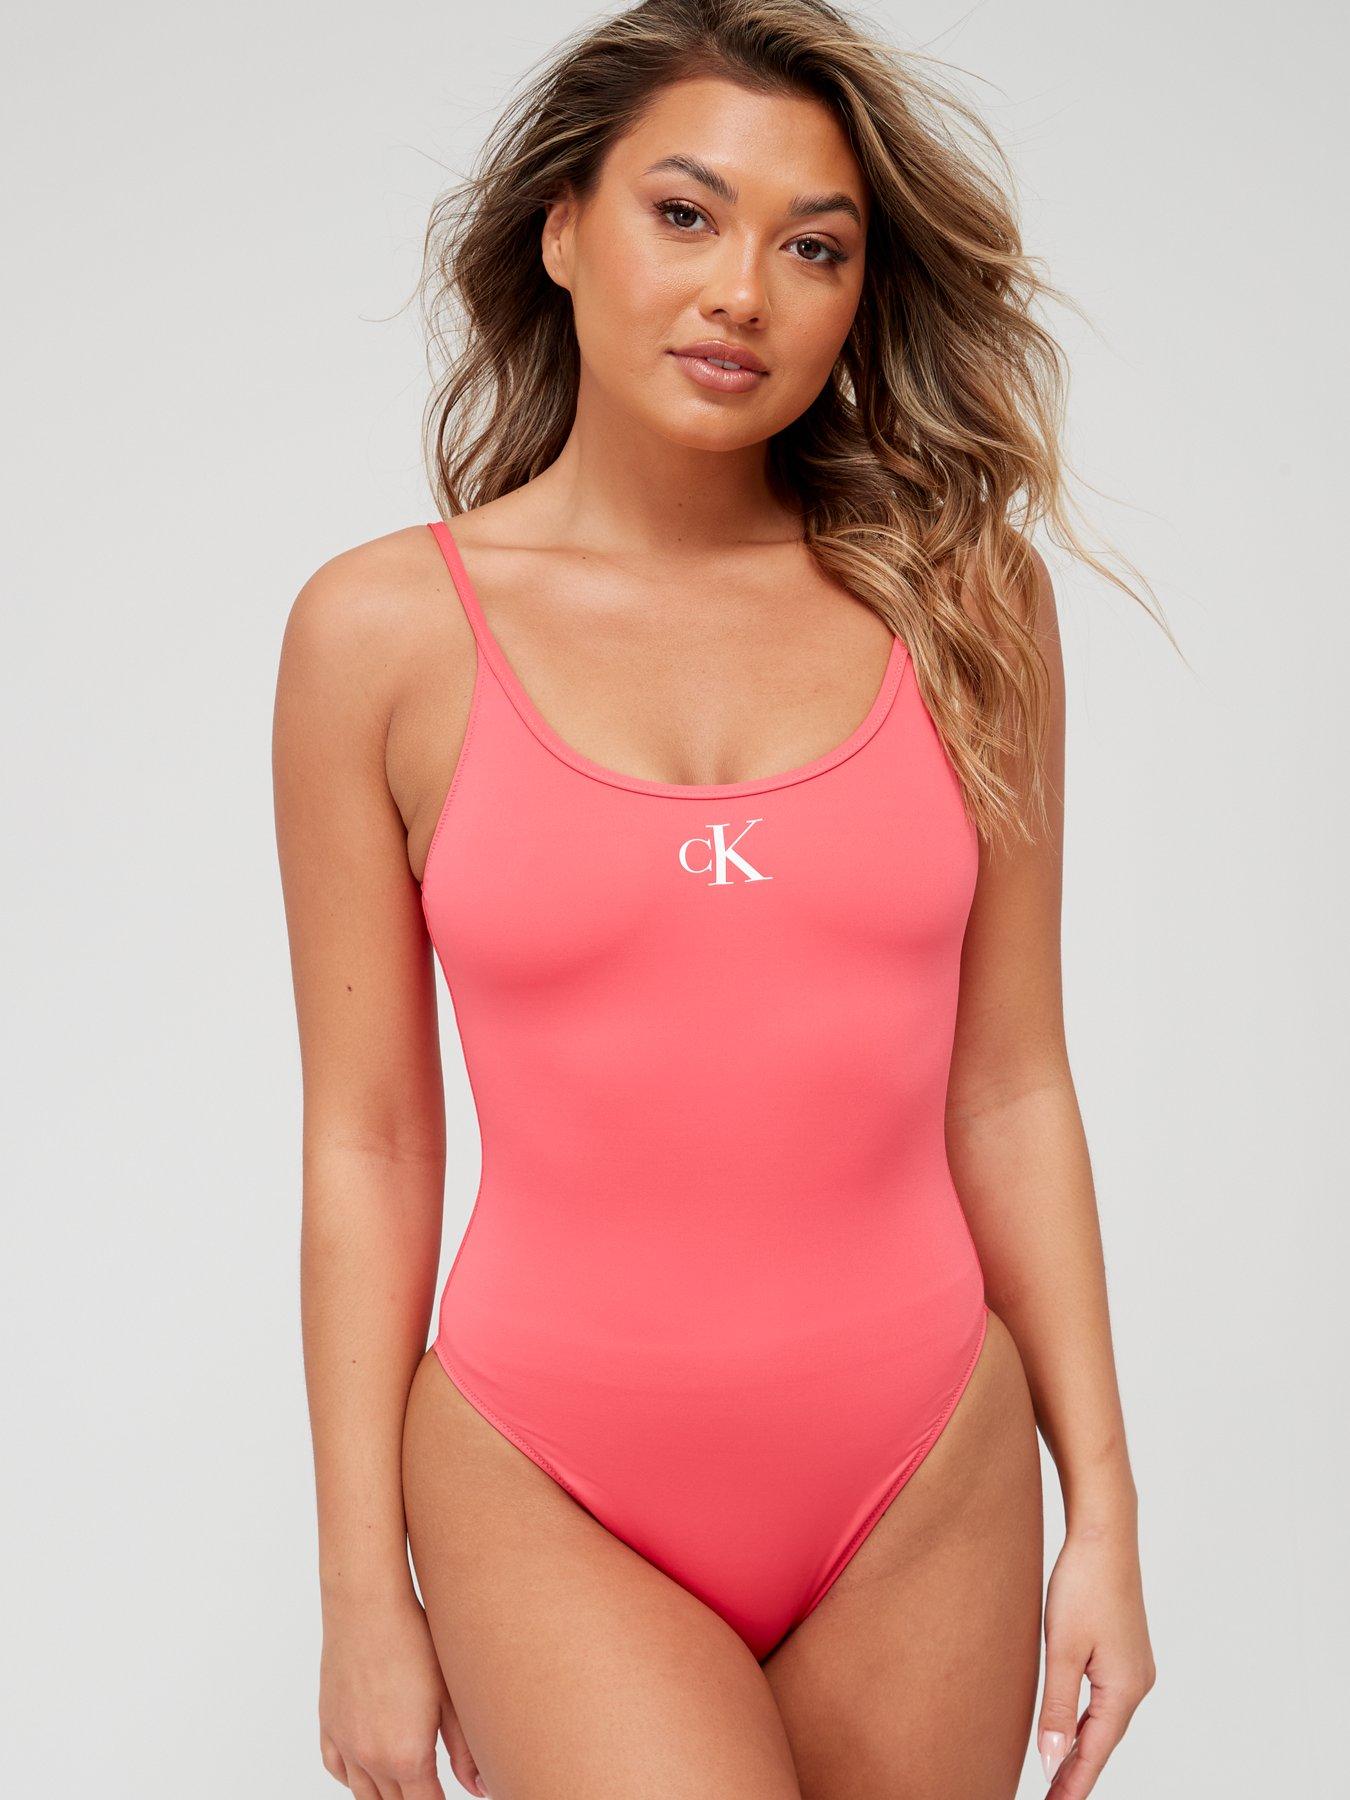 Calvin klein | Swimwear & beachwear | Women 